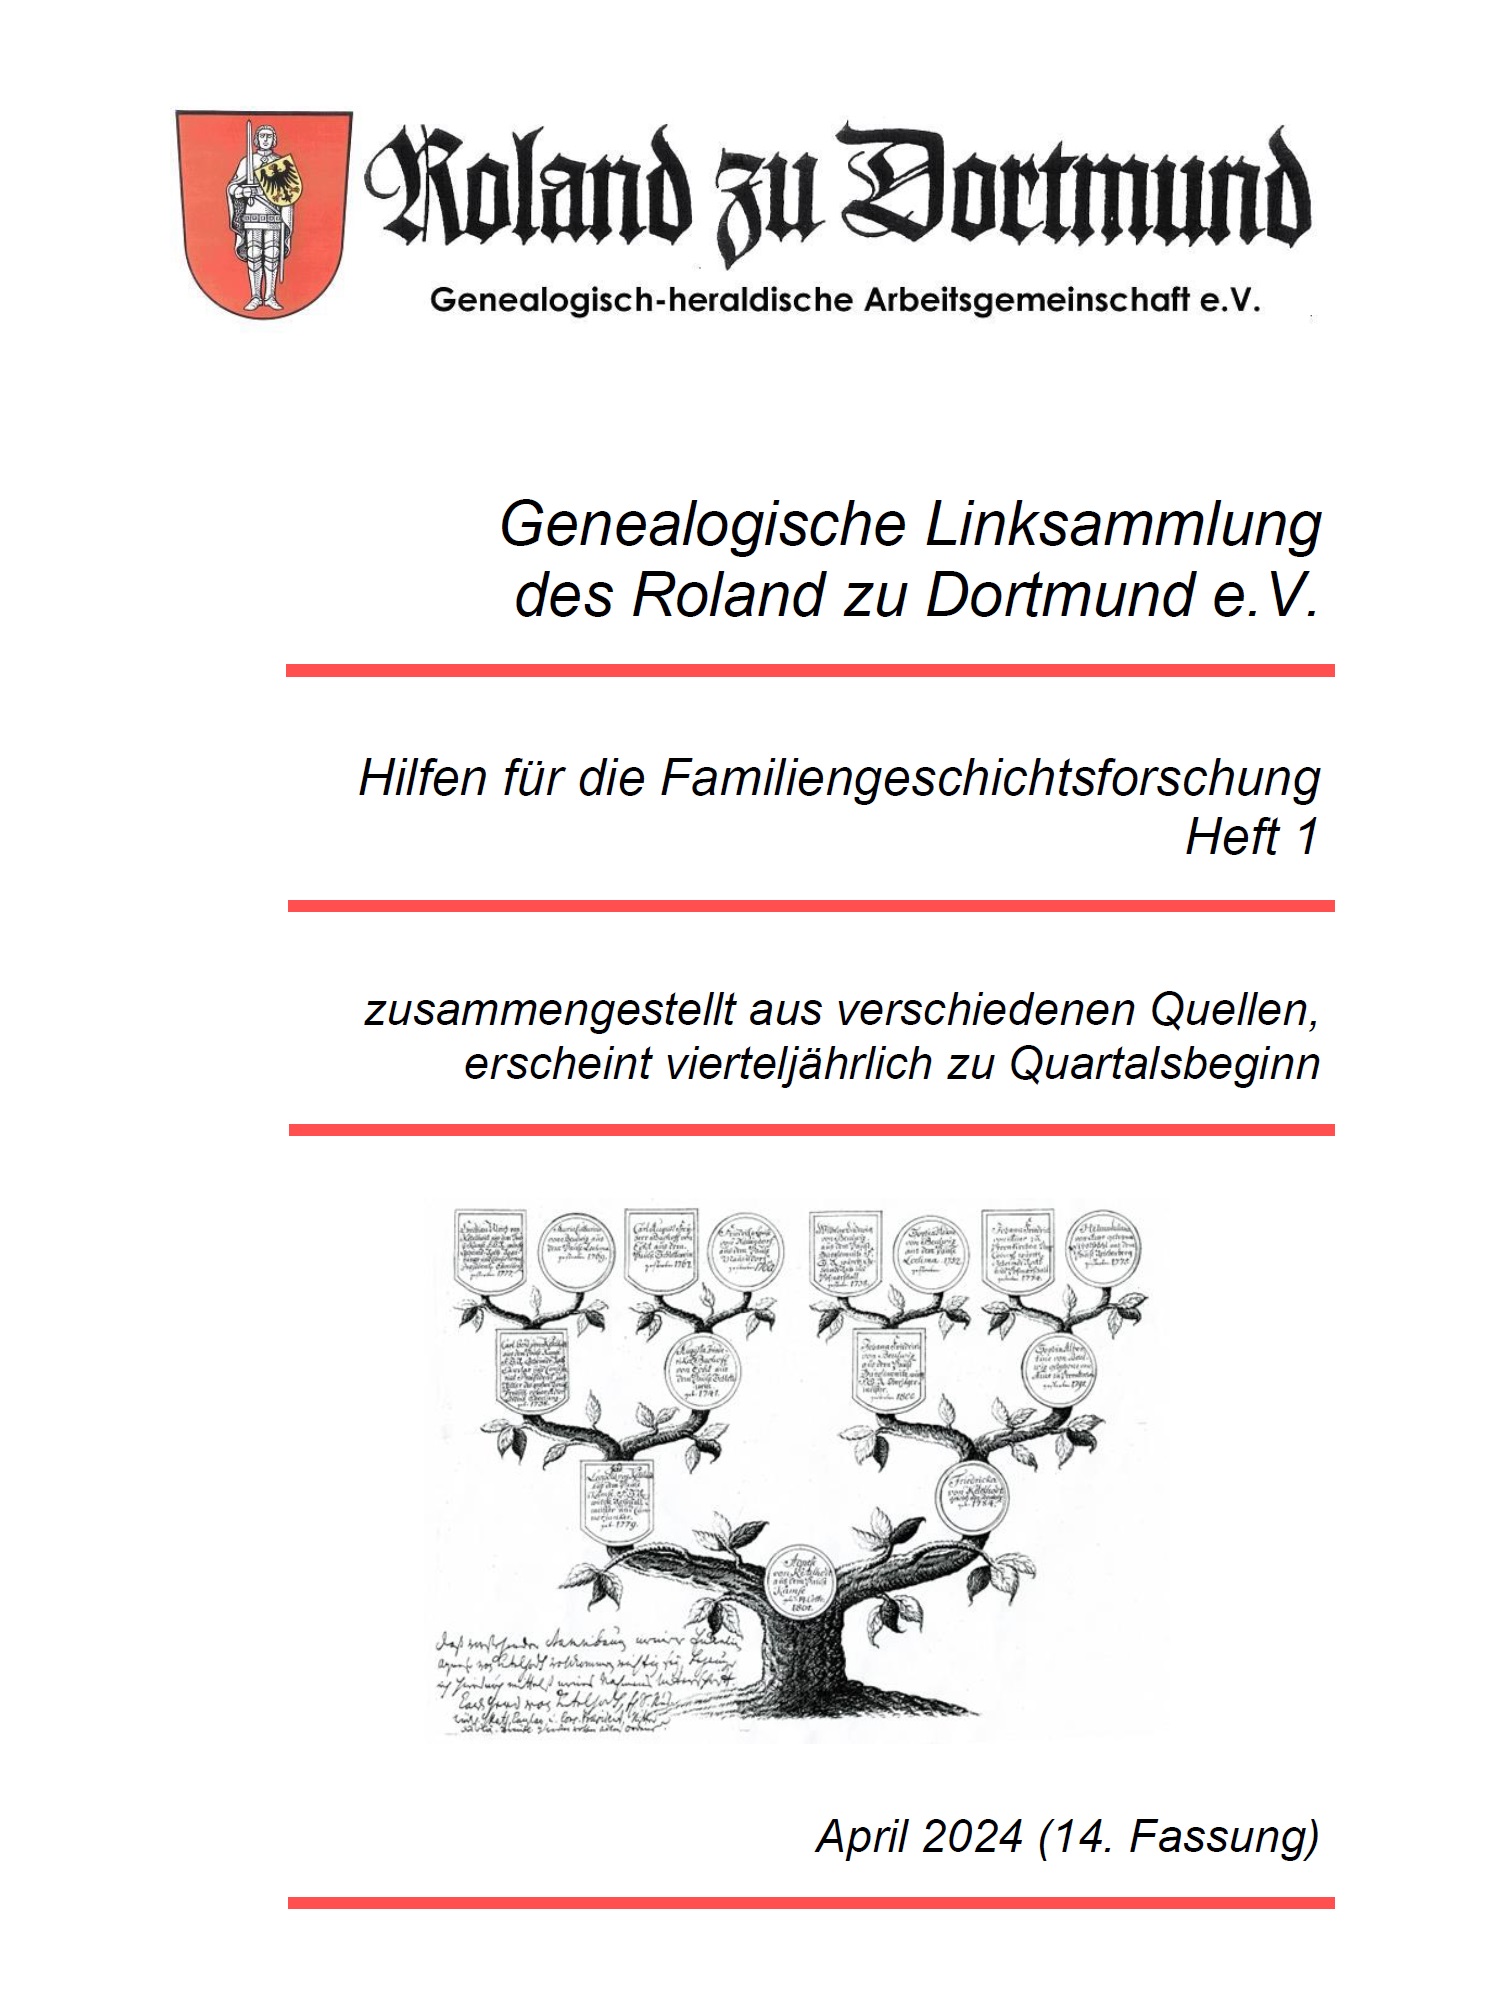 RzD-Forschungshilfen Heft 01 - Genealogische Linksammlung des Roland zu Dortmund